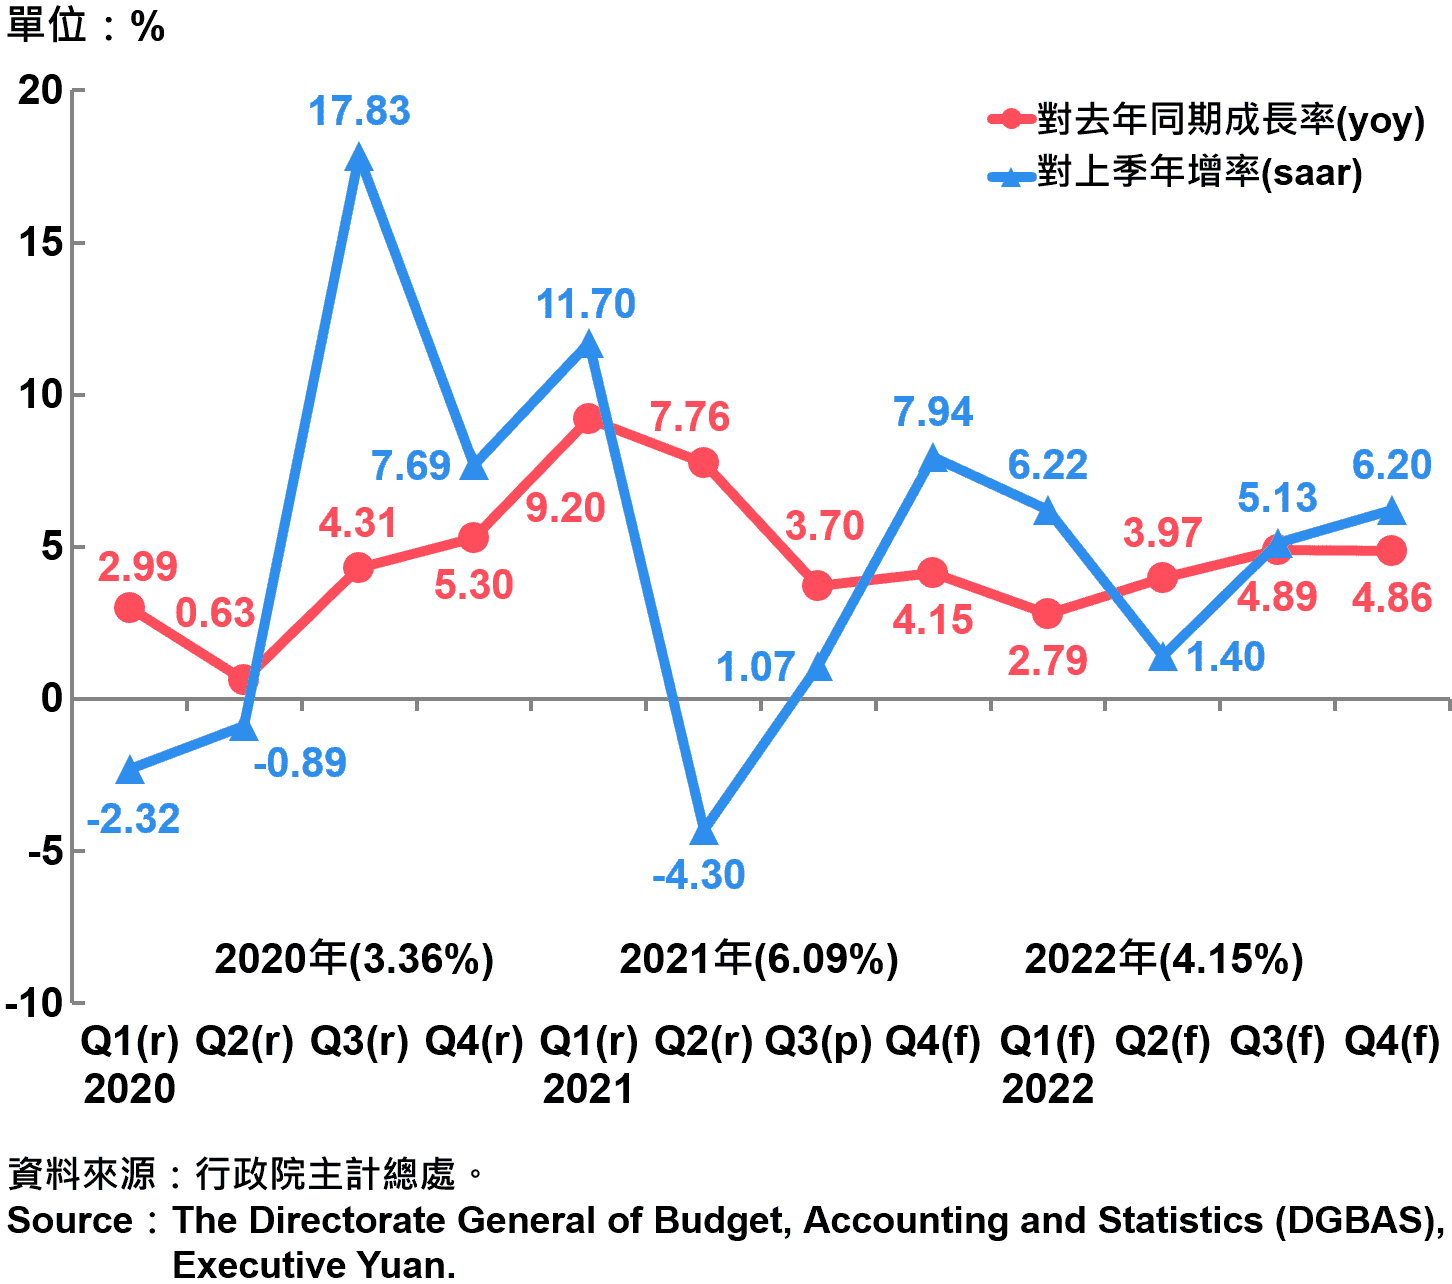 臺灣經濟成長率 Growth Rate of Real GDP in Taiwan